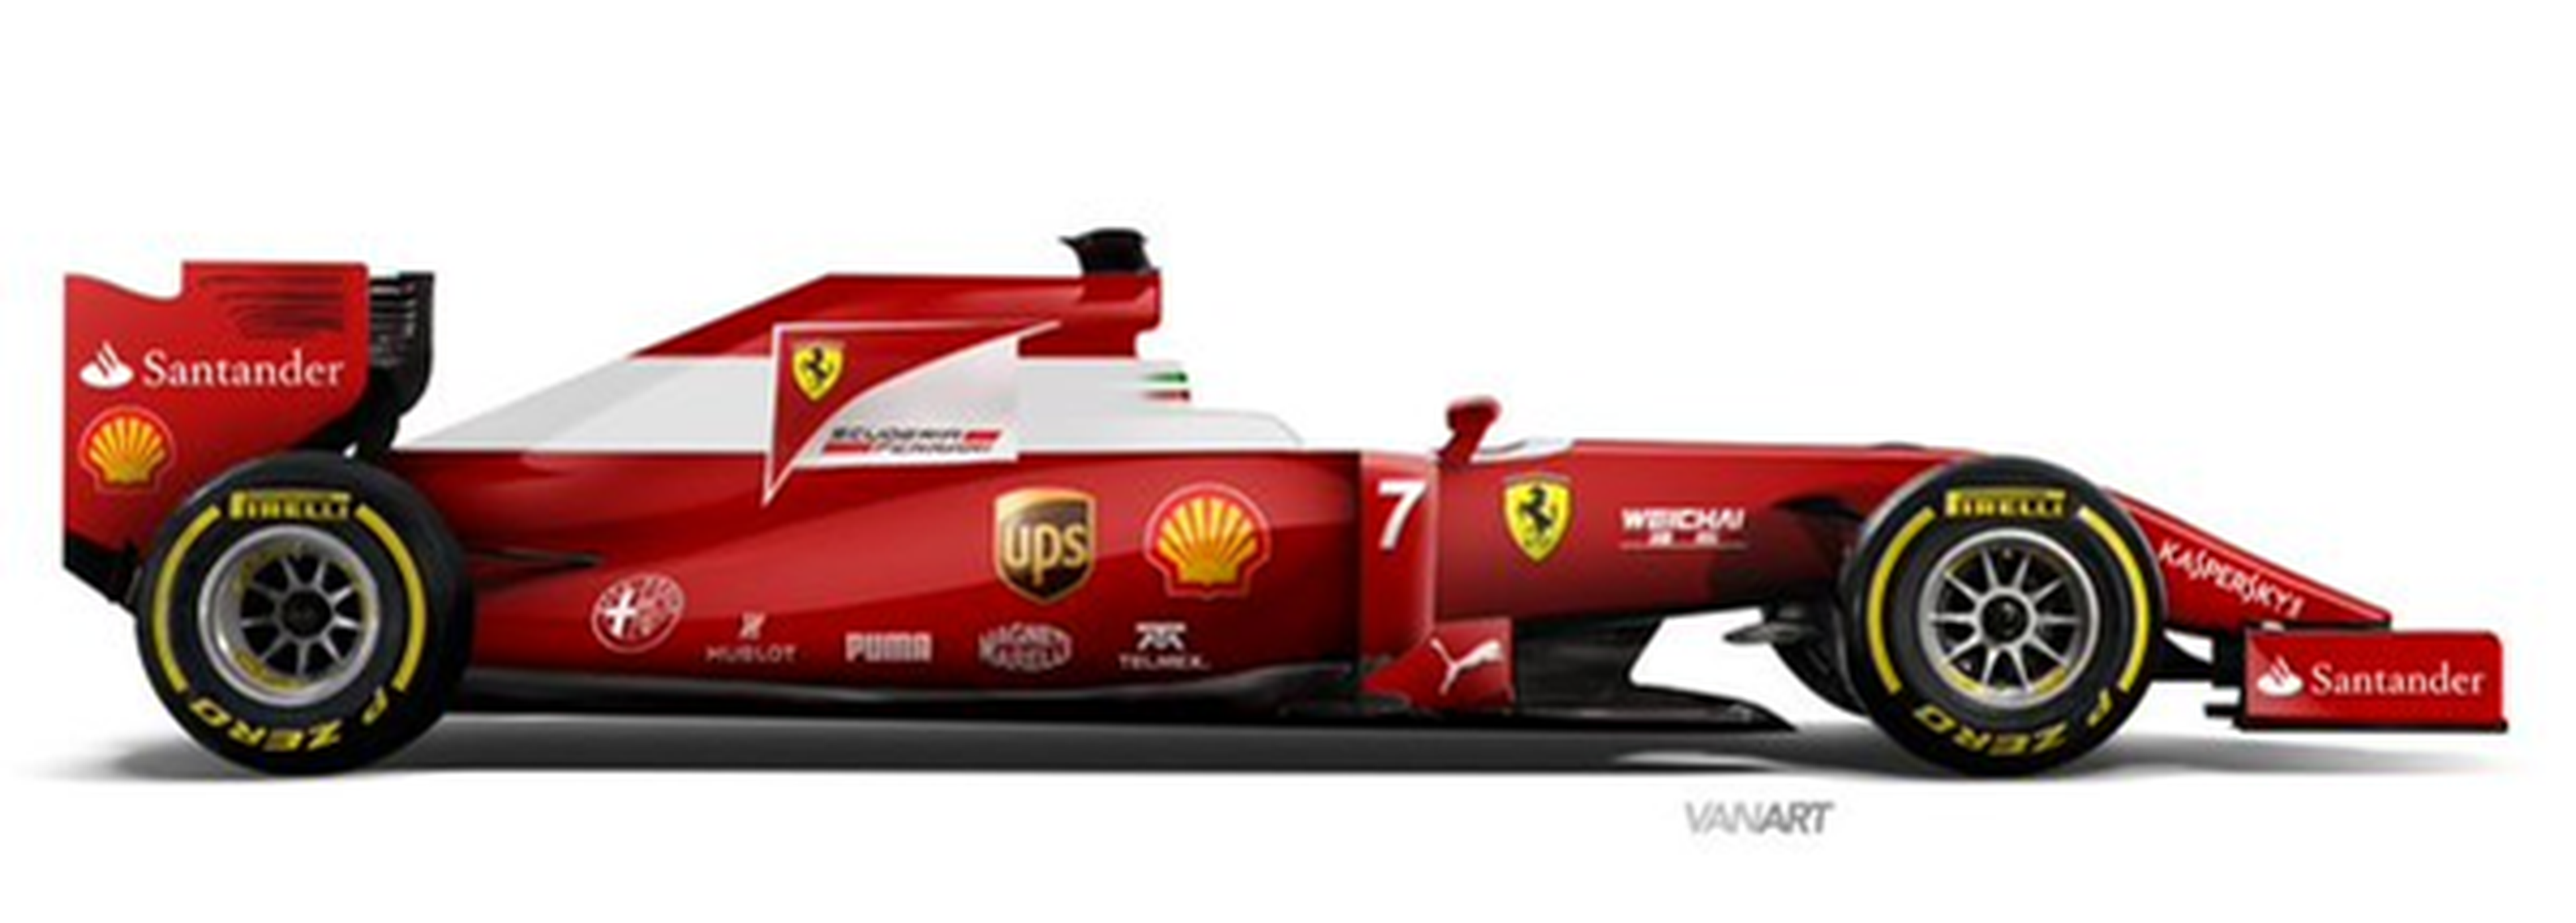 Posible decoración Ferrari 2016 2